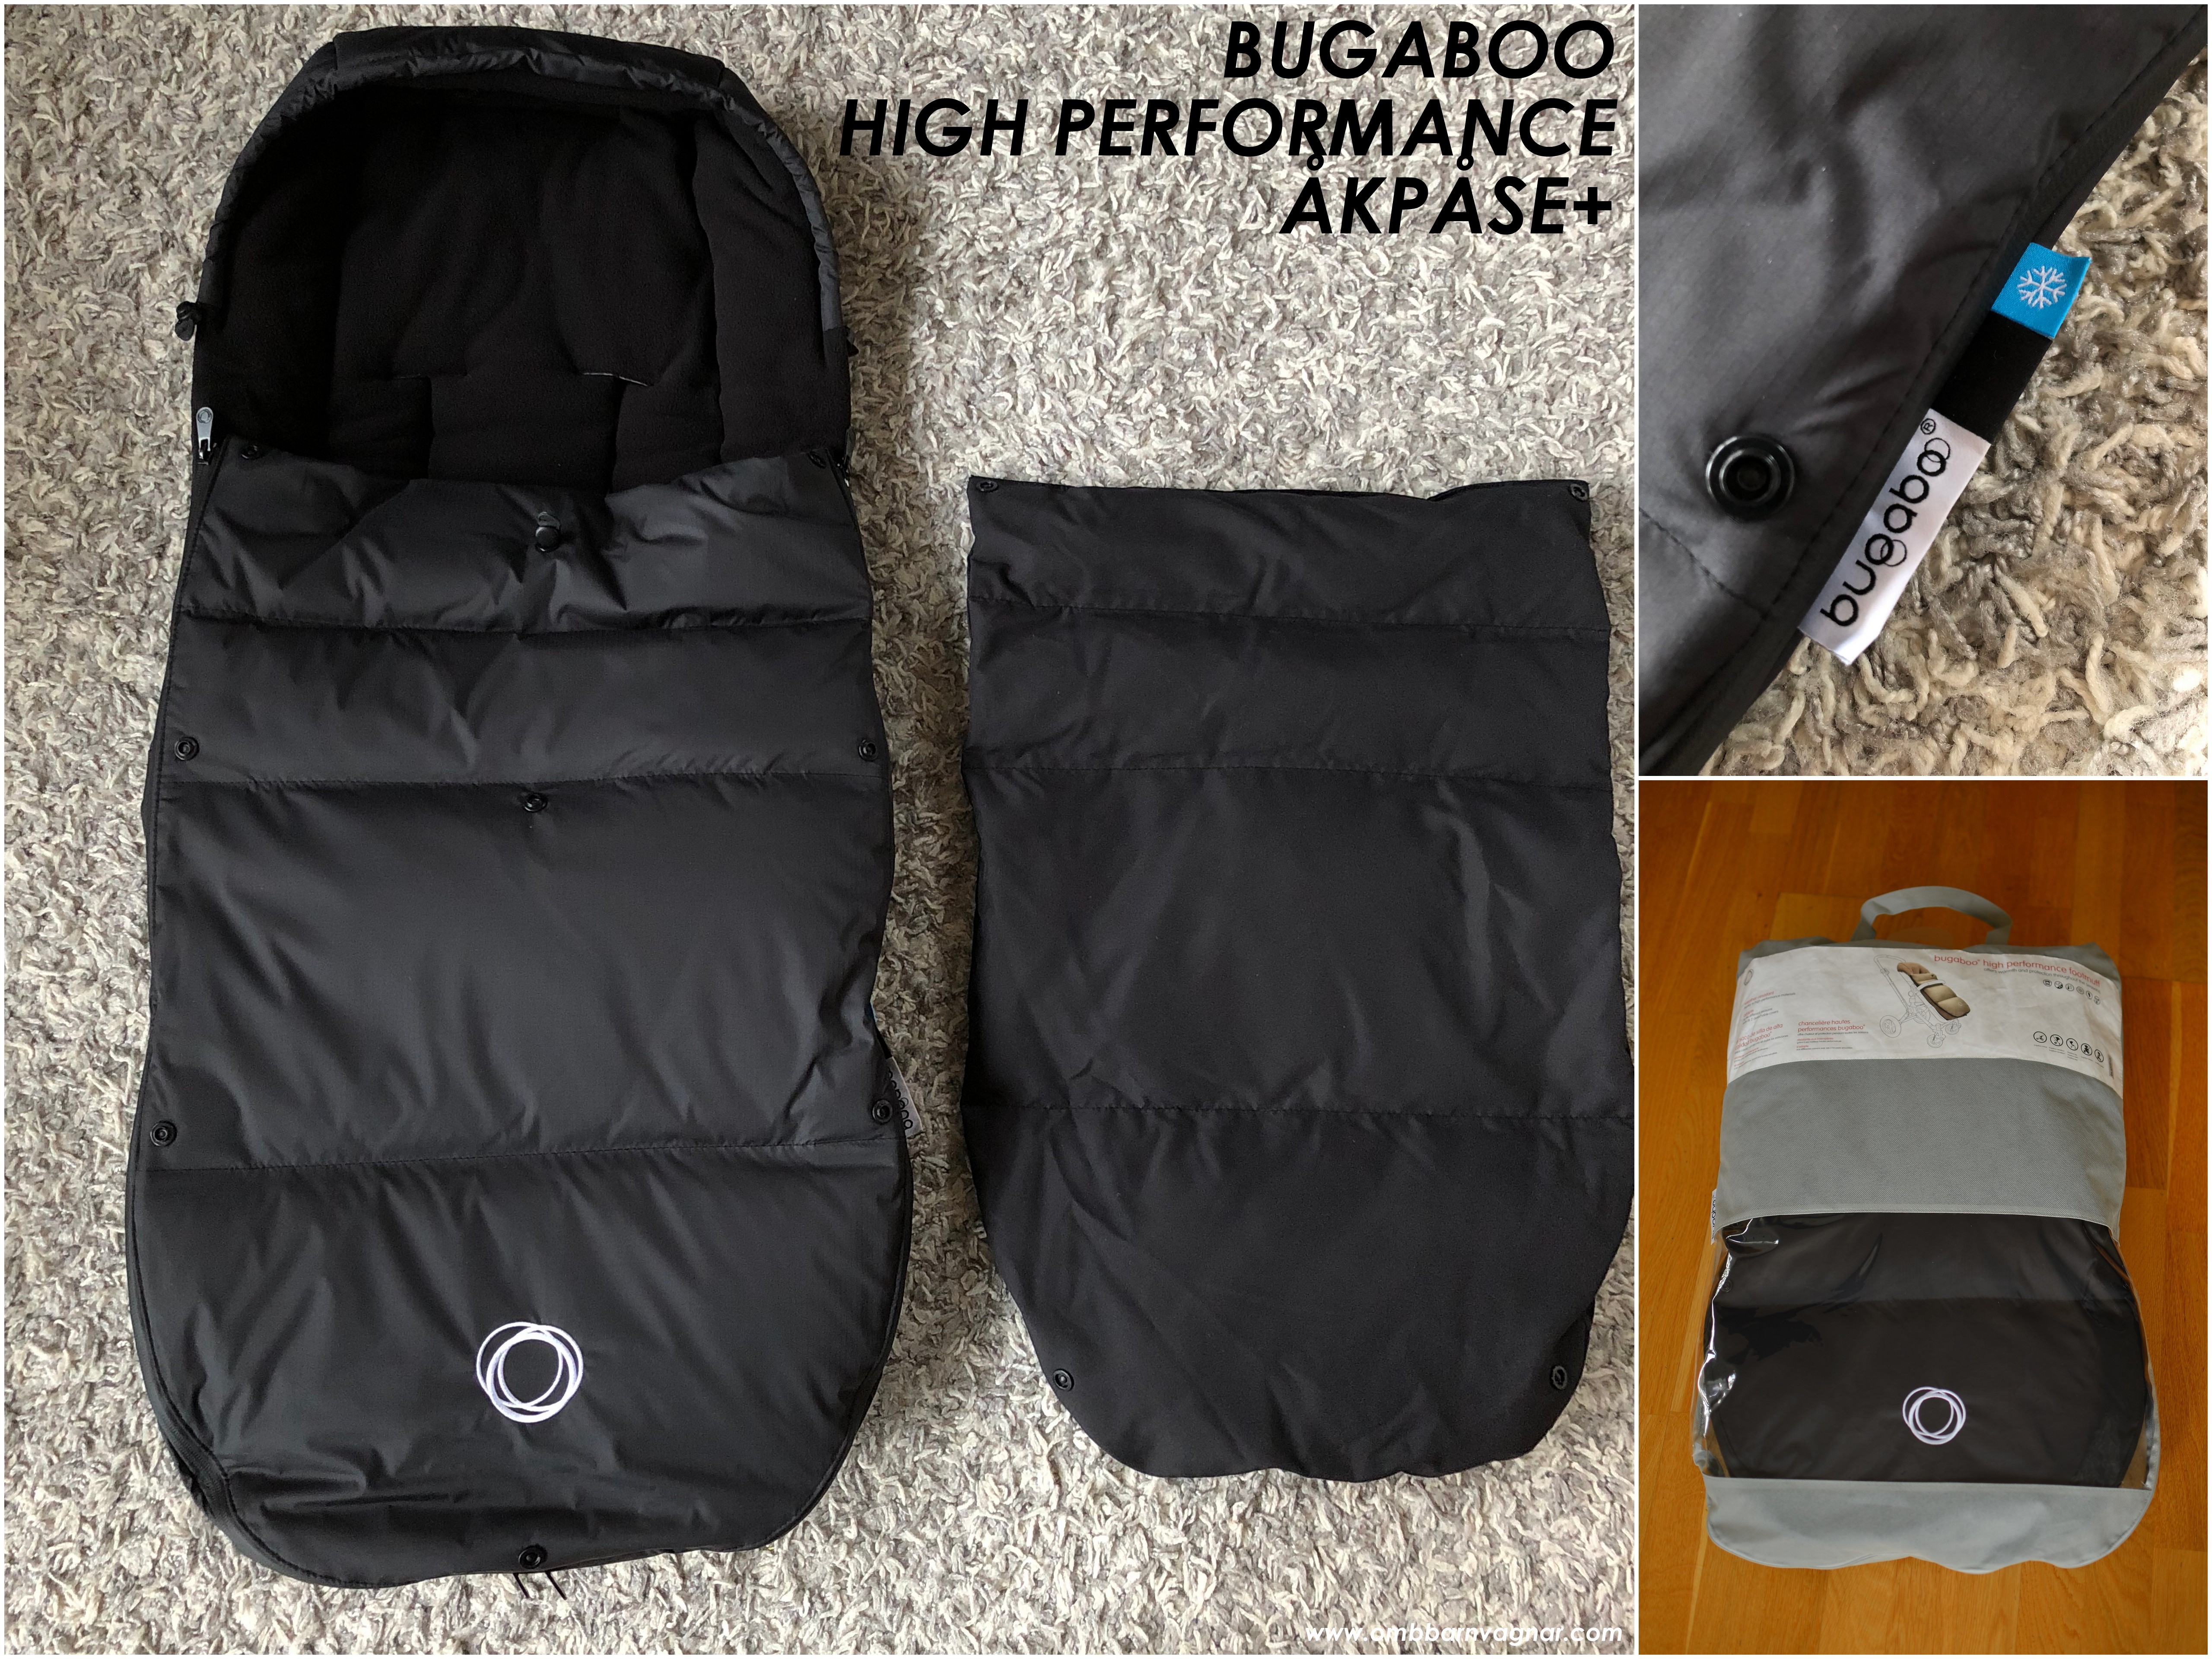 Recension av Bugaboo High Performance+ vinteråkpåse